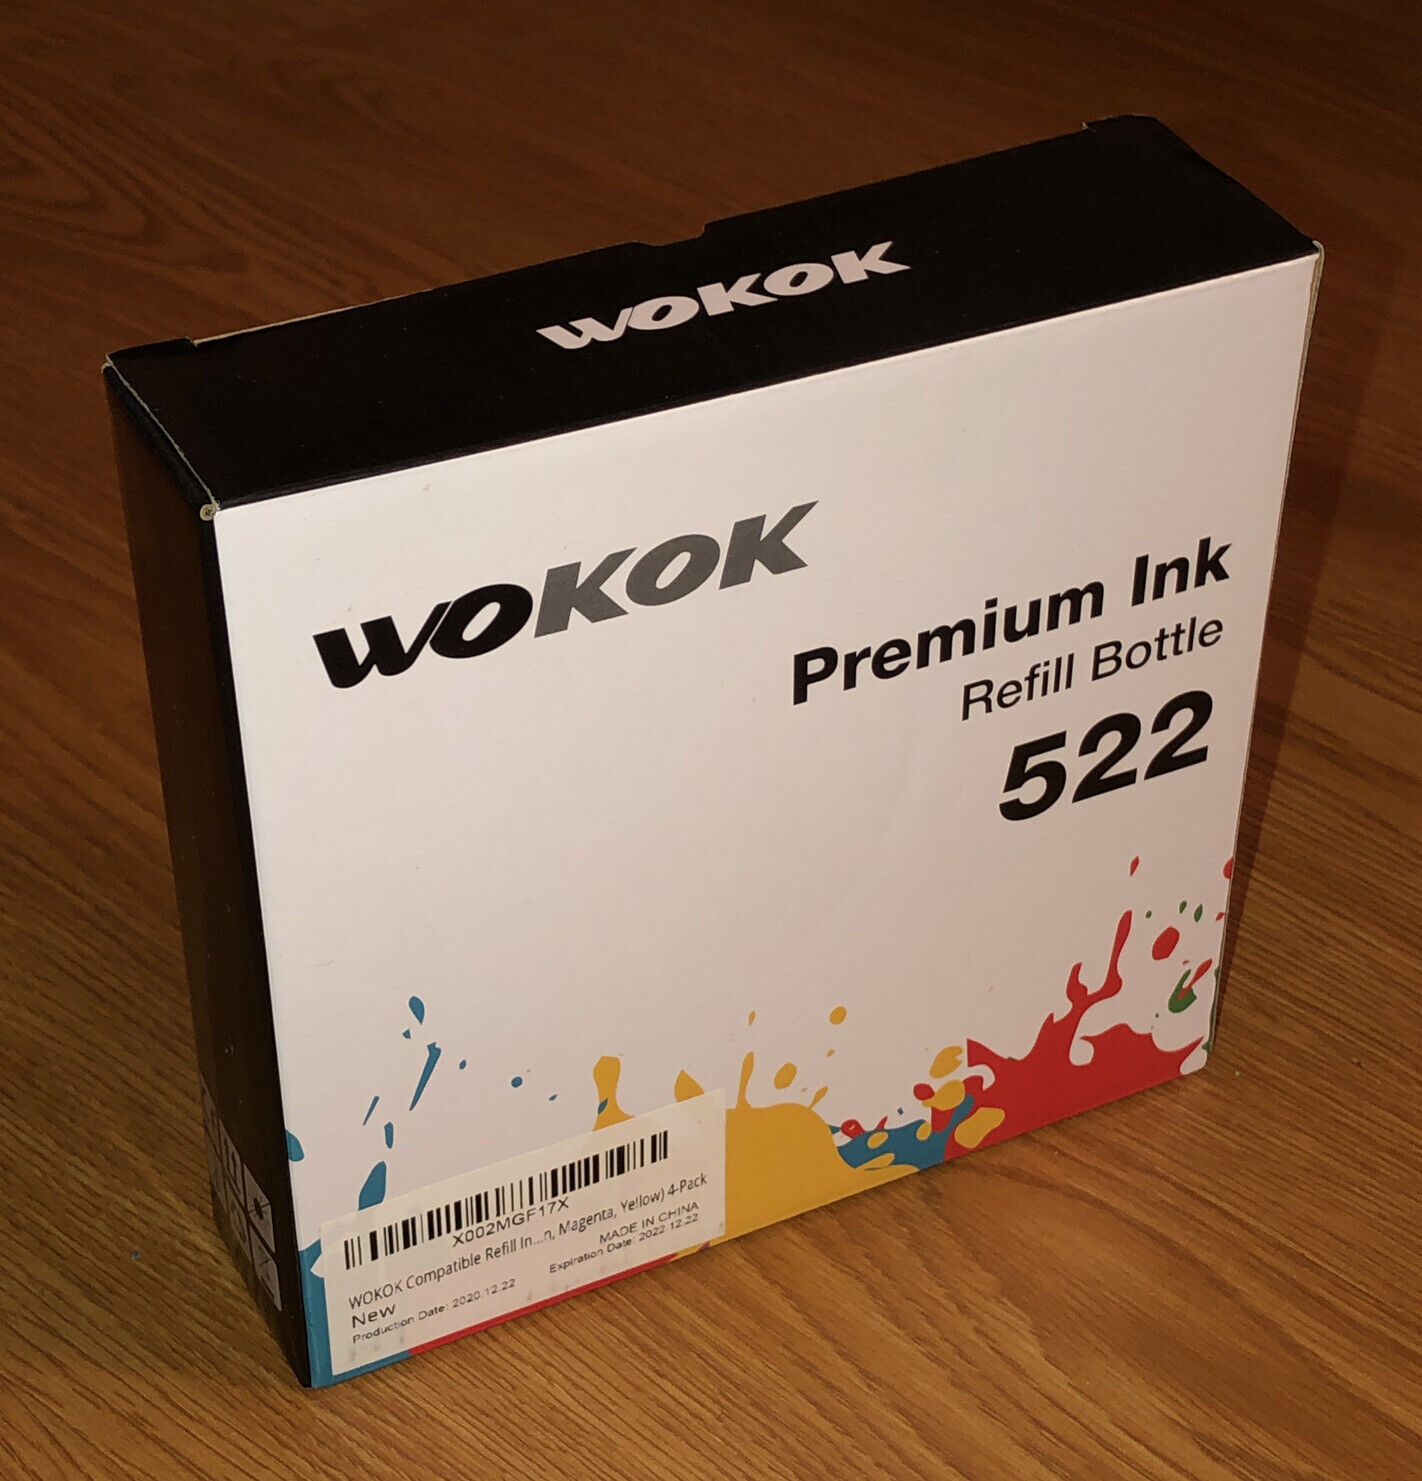 NEW Wokok Premium Ink Refill Bottle 522 - 4 Pack Sealed